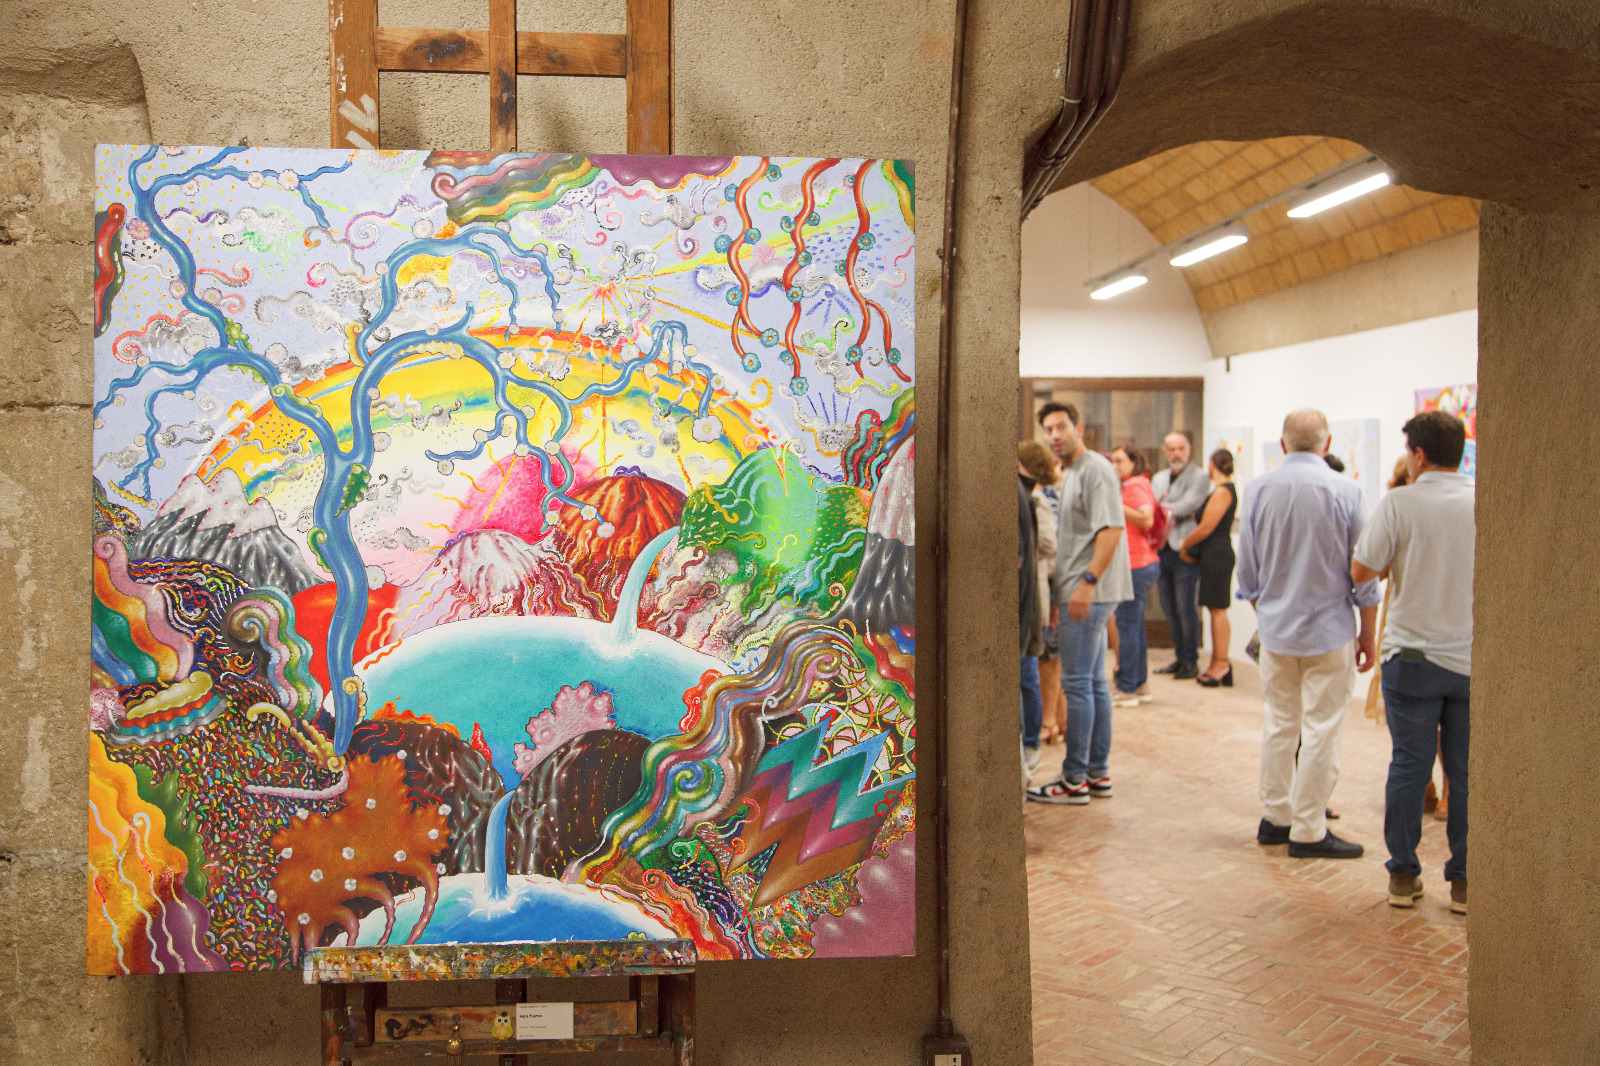 “FABULA” i capolavori surreali di Luca Alinari incantano nella mostra allestita al Castello Aragonese di Reggio Calabria